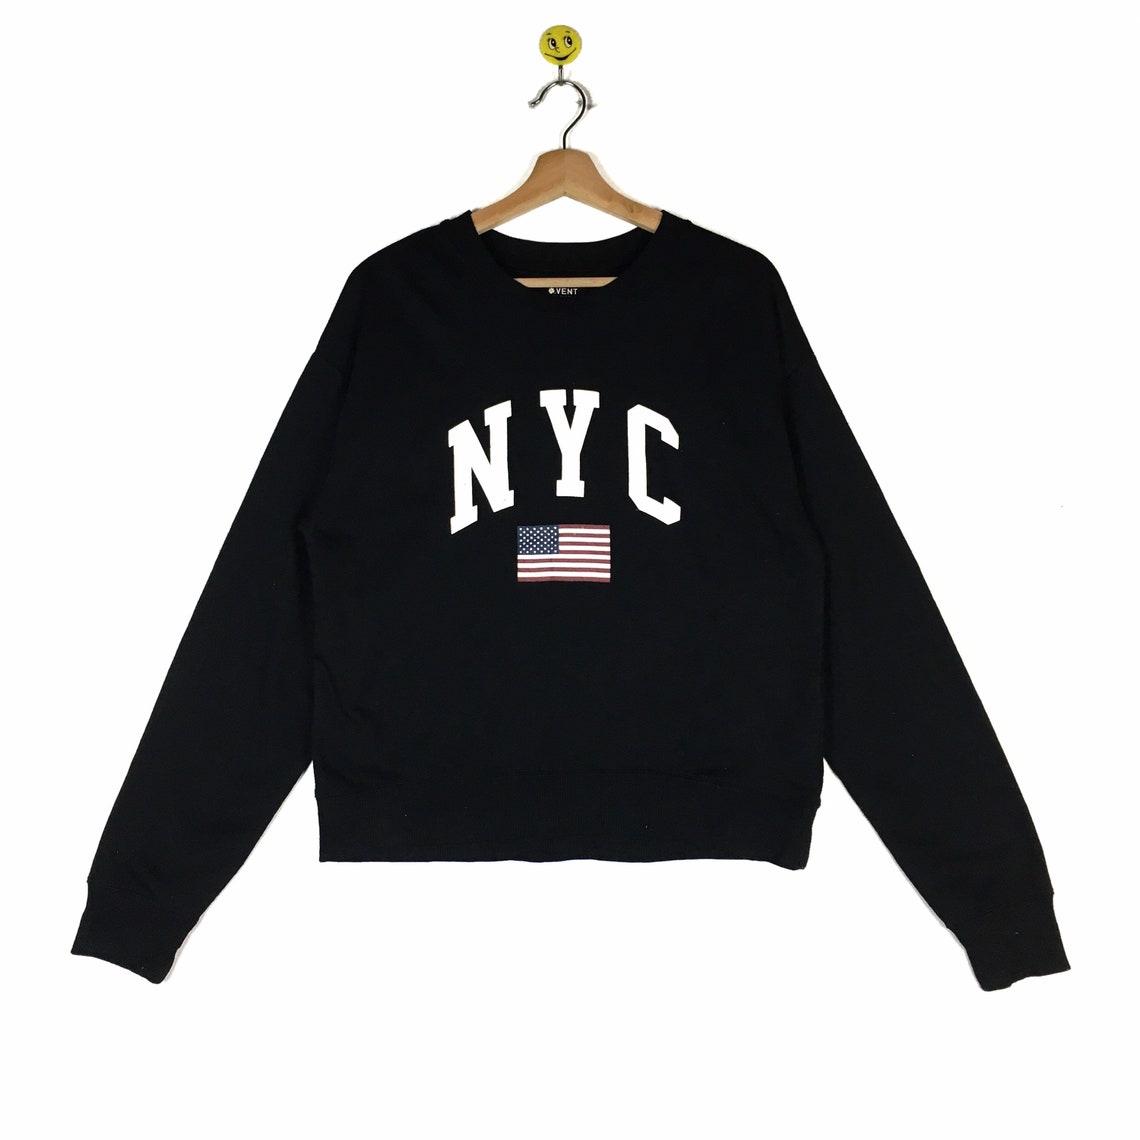 Rare New York sweatshirt New York pullover New York NY City | Etsy